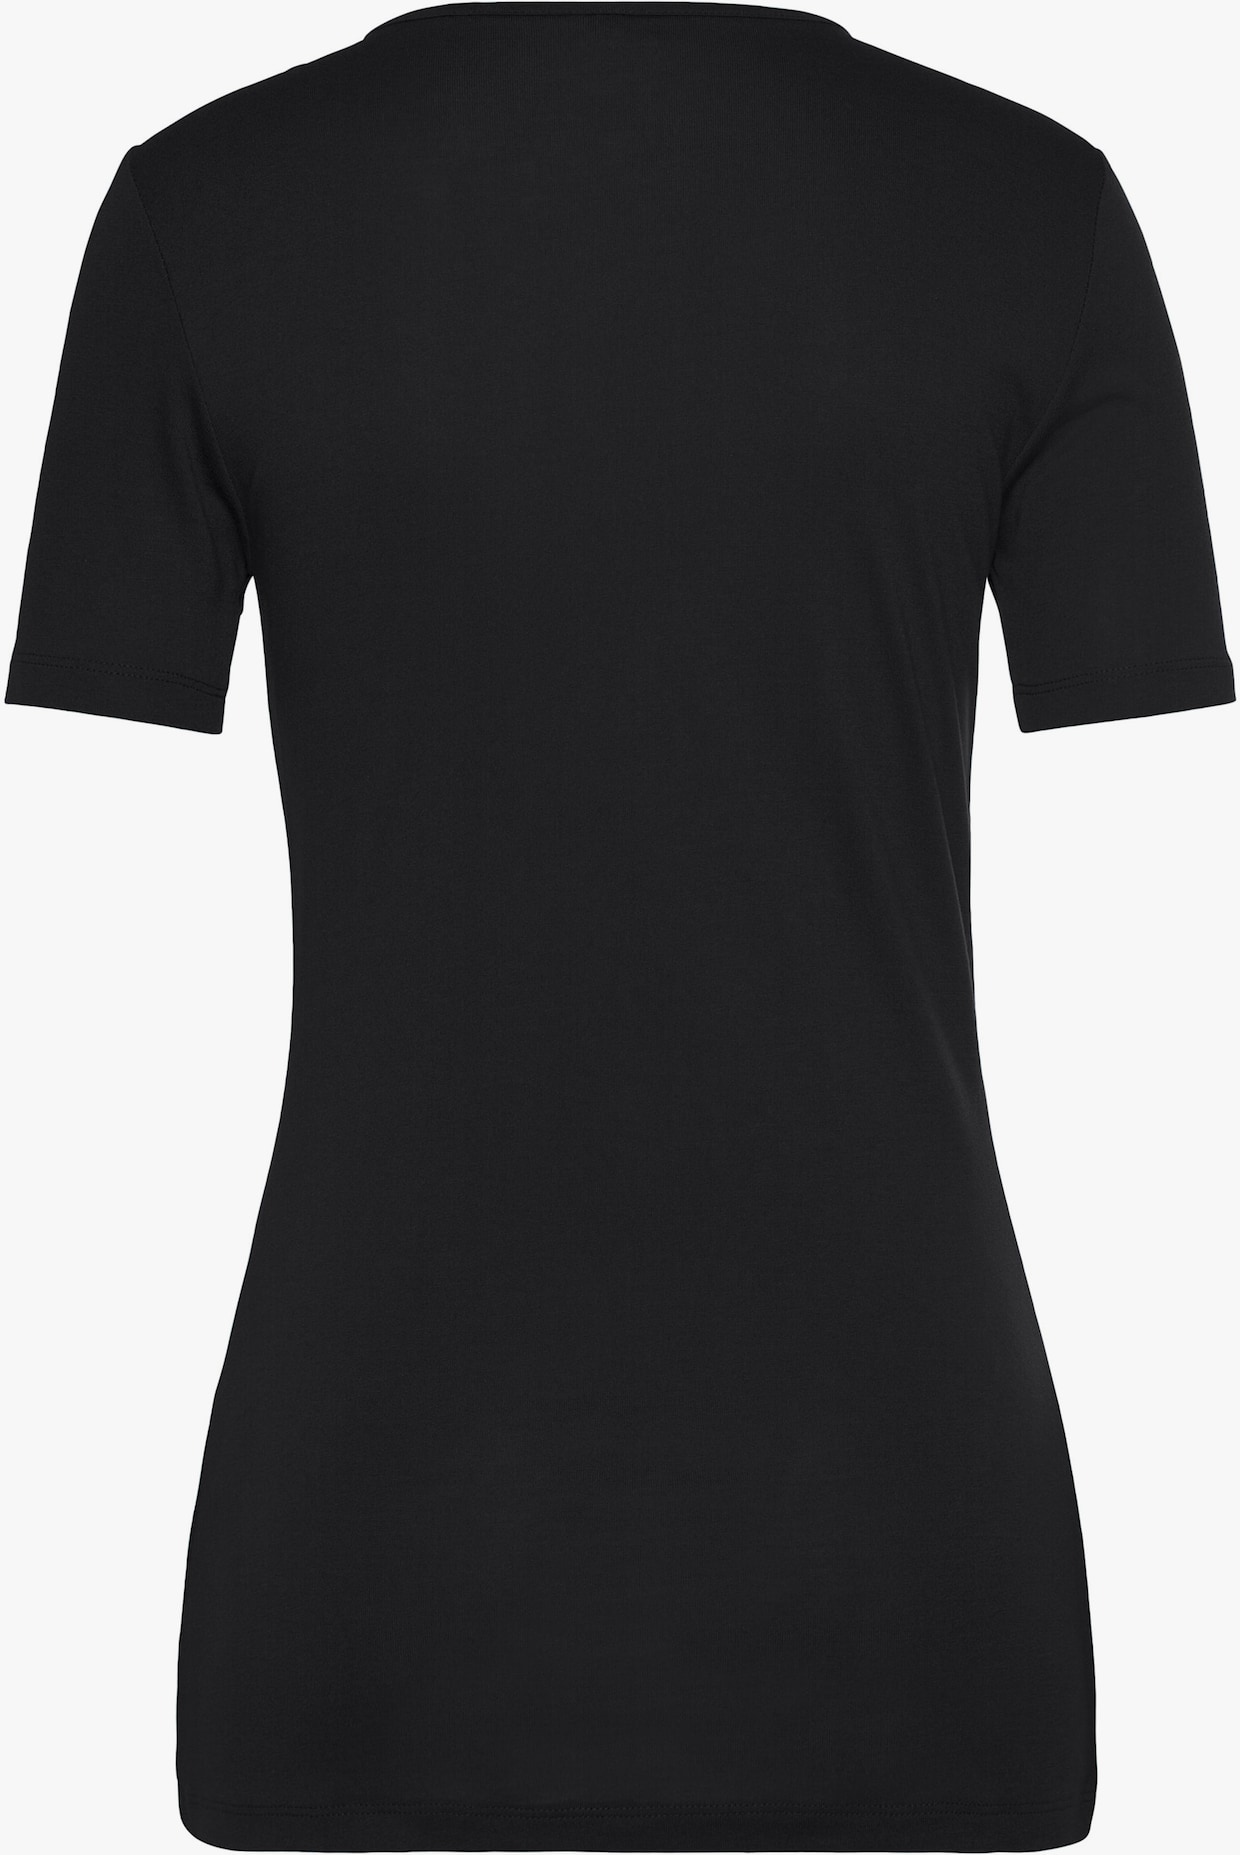 Vivance 2-in-1-Shirt - schwarz-weiss